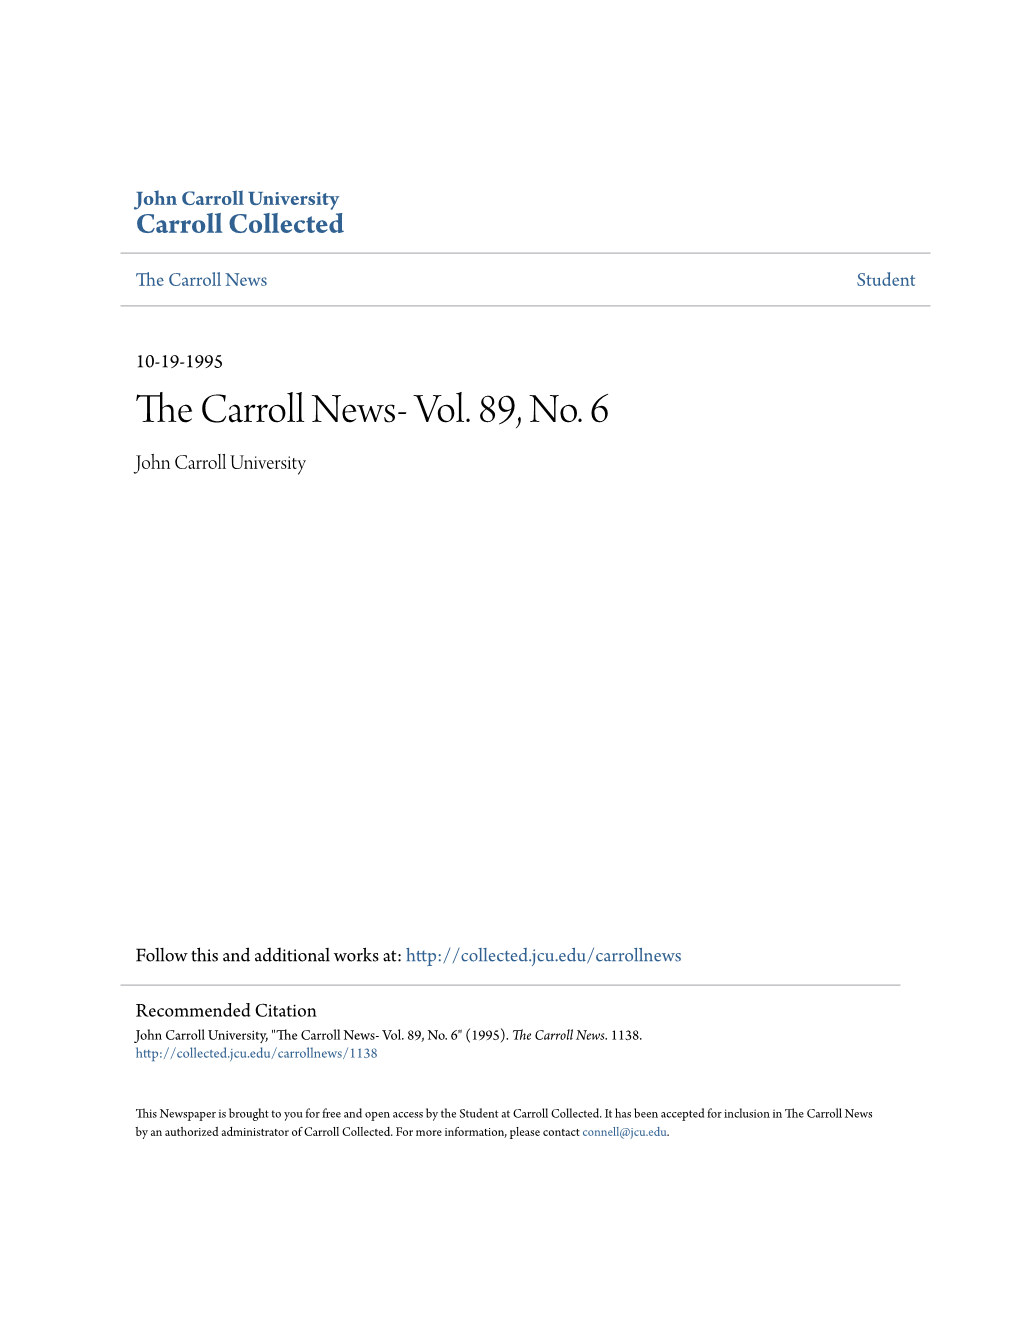 The Carroll News- Vol. 89, No. 6